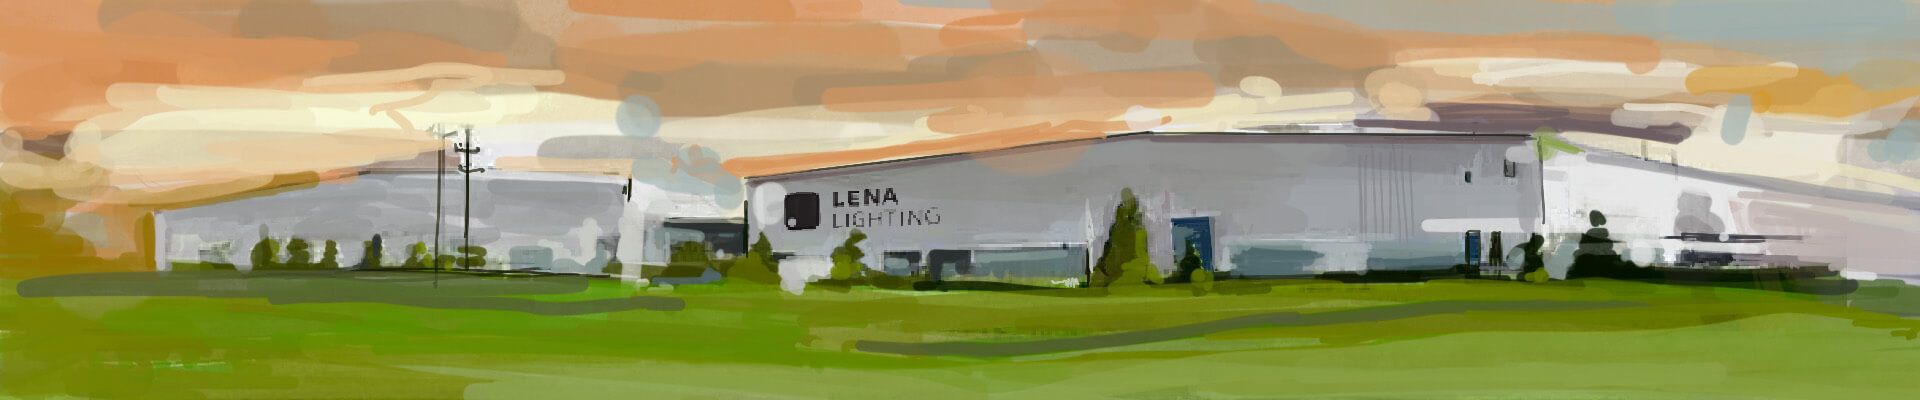 Lena Lighting- fabriek en magazijn